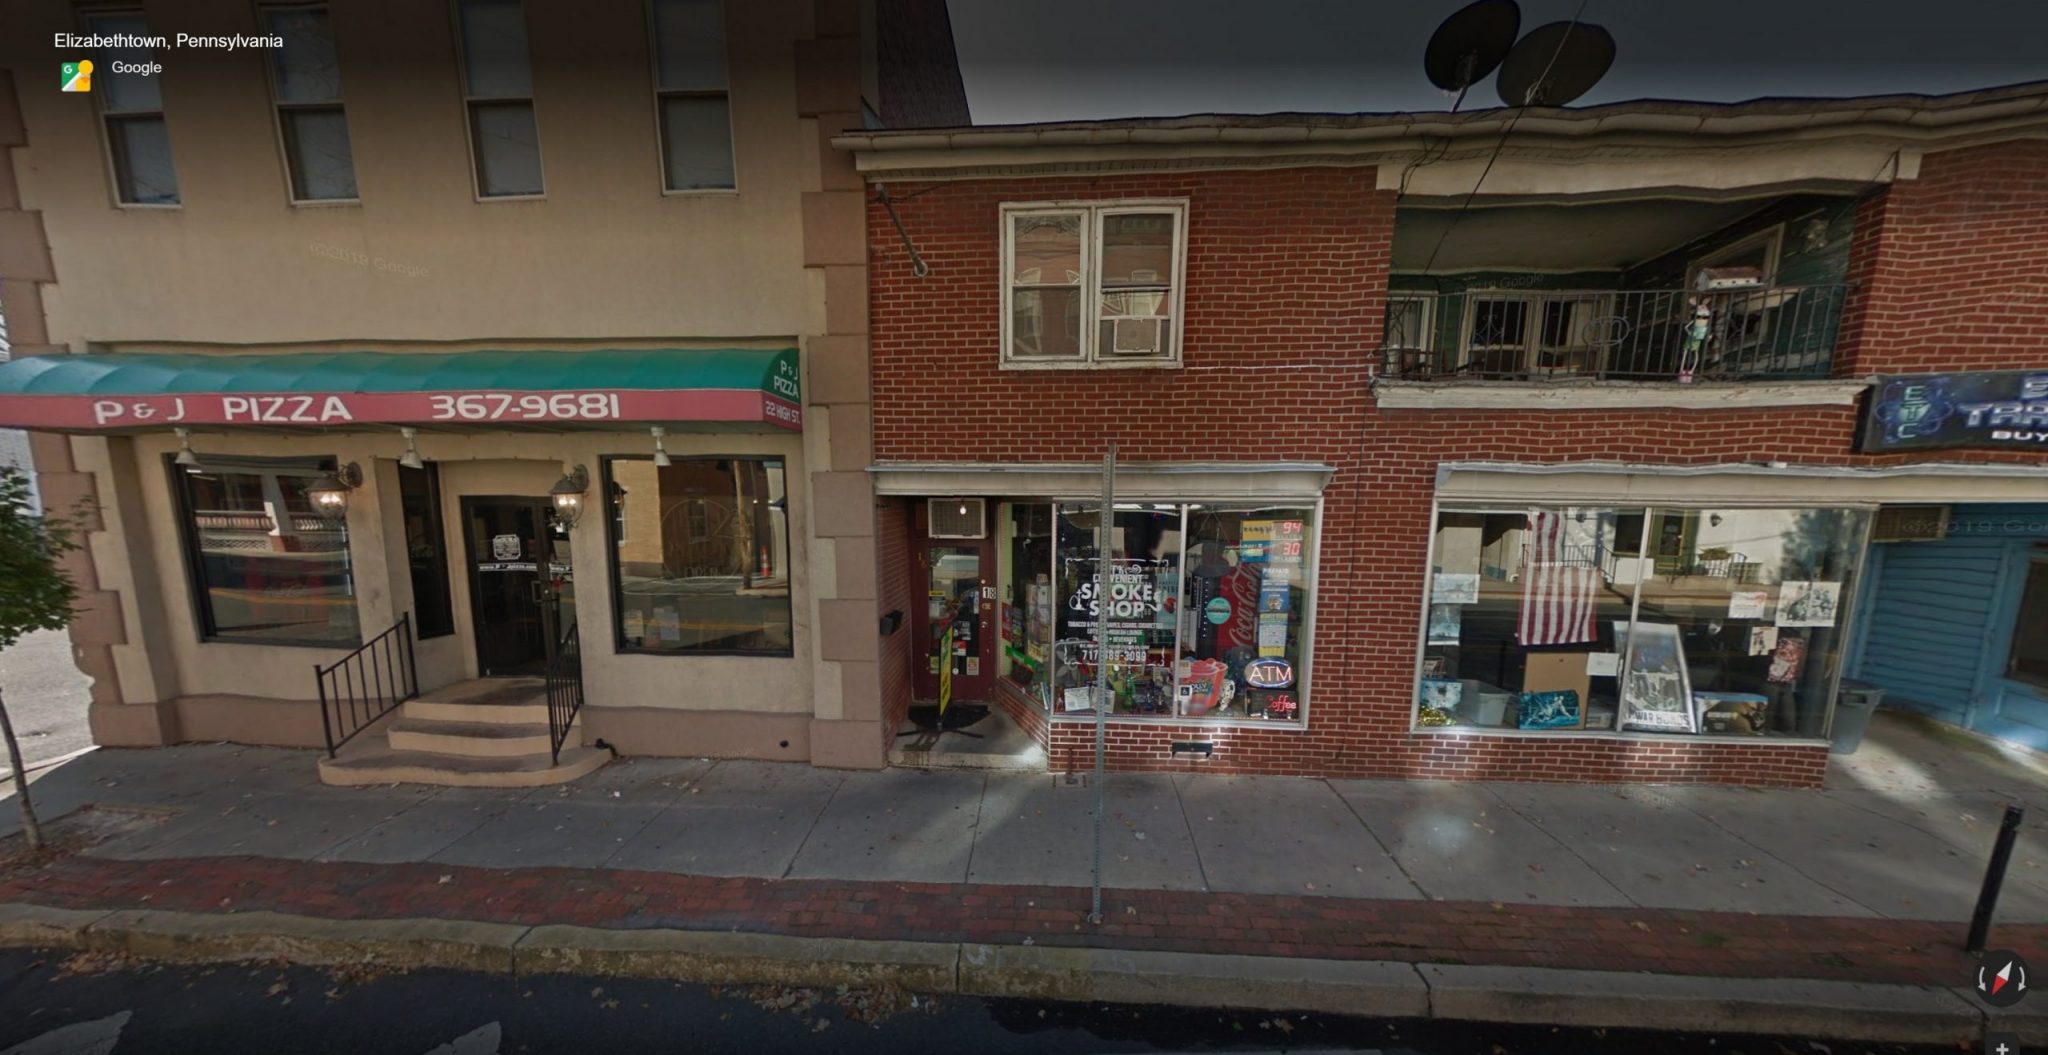 TK's Convenient Smoke Shop 18 E High St, Elizabethtown, PA 17022 Hippo Kiosk Bitcoin ATM